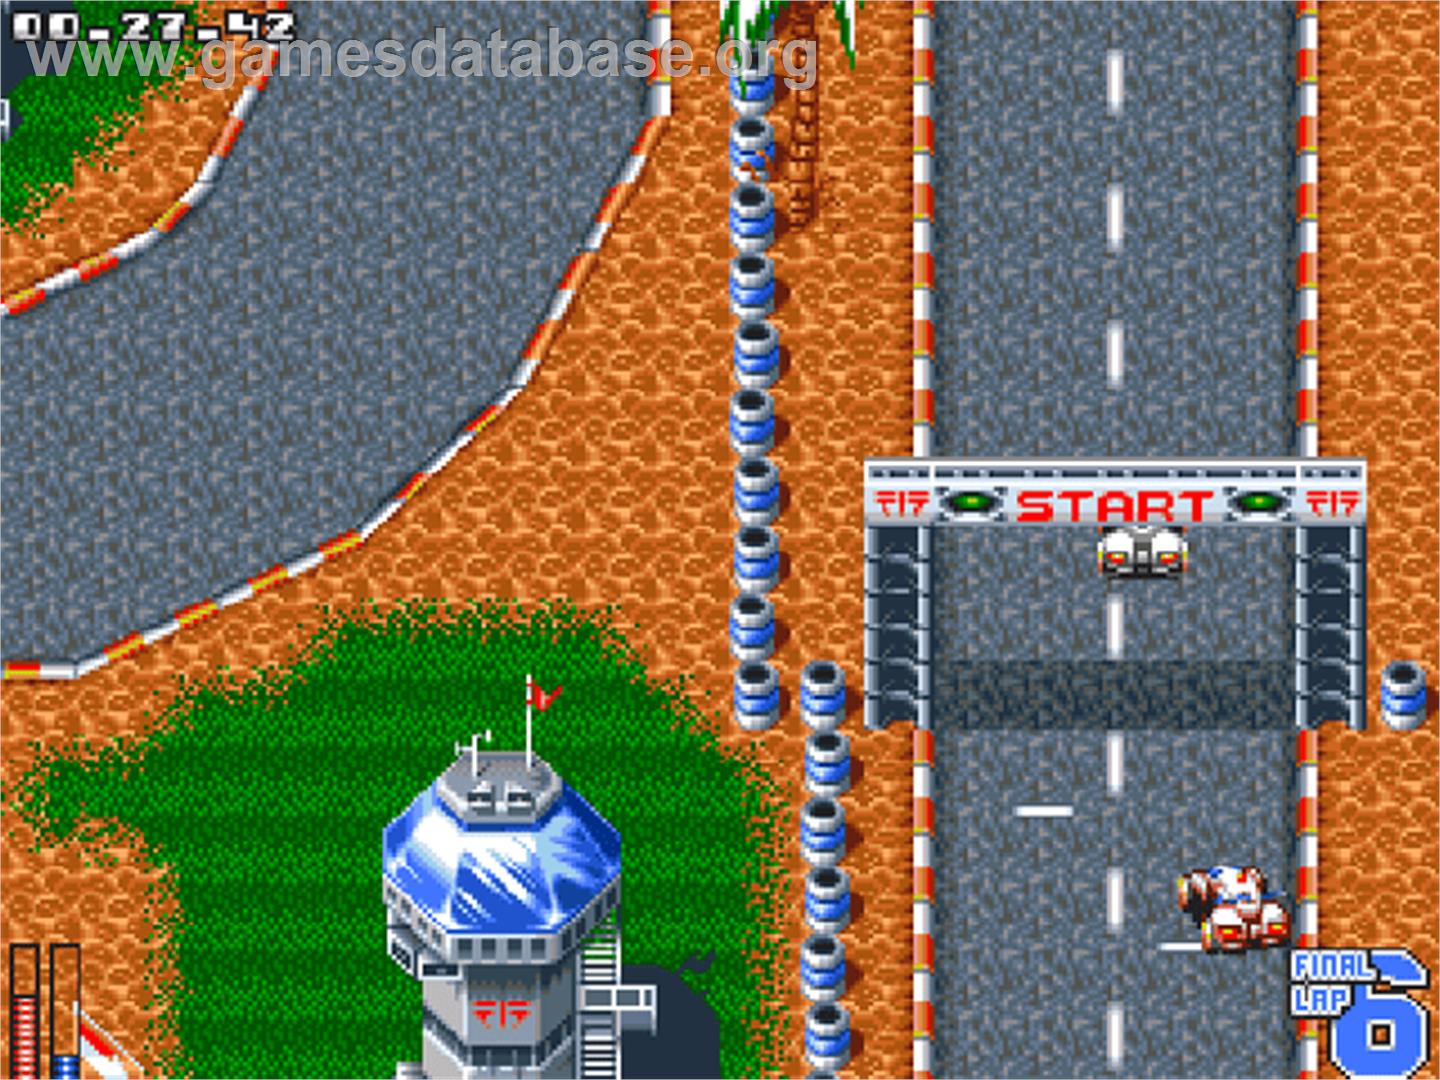 ATR: All Terrain Racing - Commodore Amiga CD32 - Artwork - In Game